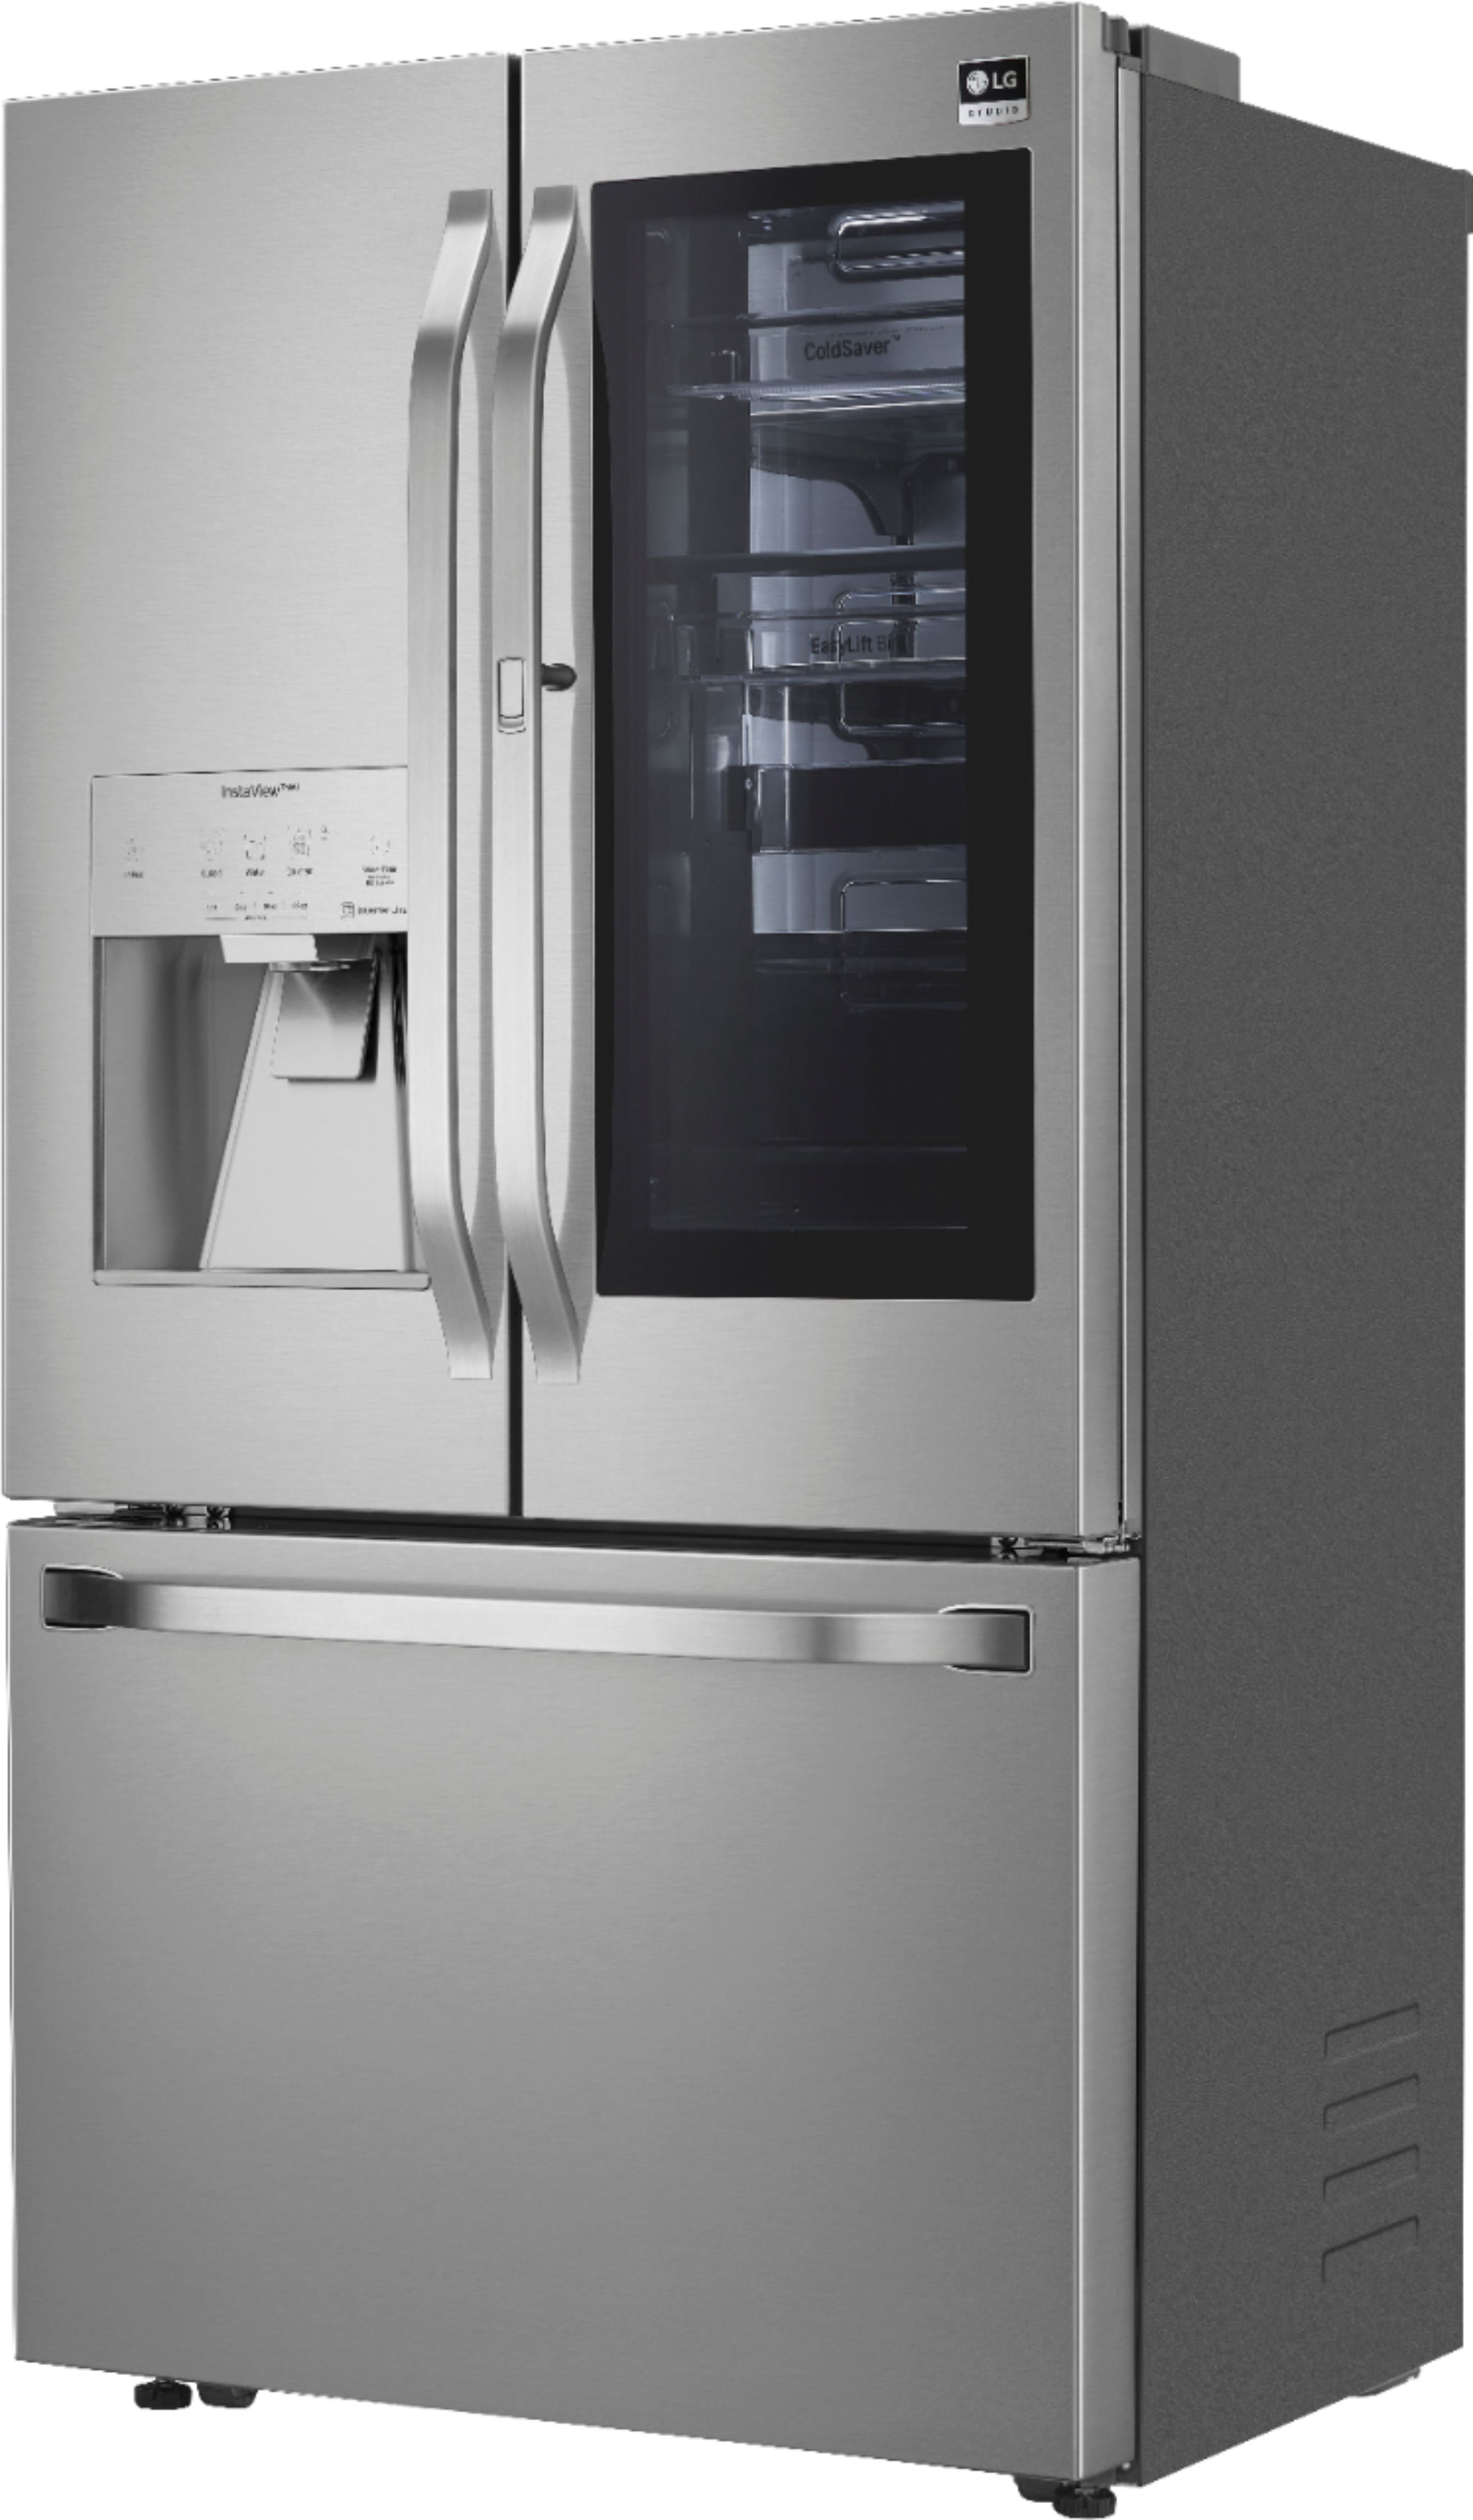 Left View: LG - STUDIO 23.5 Cu. Ft. French InstaView Door-in-Door Counter-Depth Refrigerator with Craft Ice - Stainless Steel